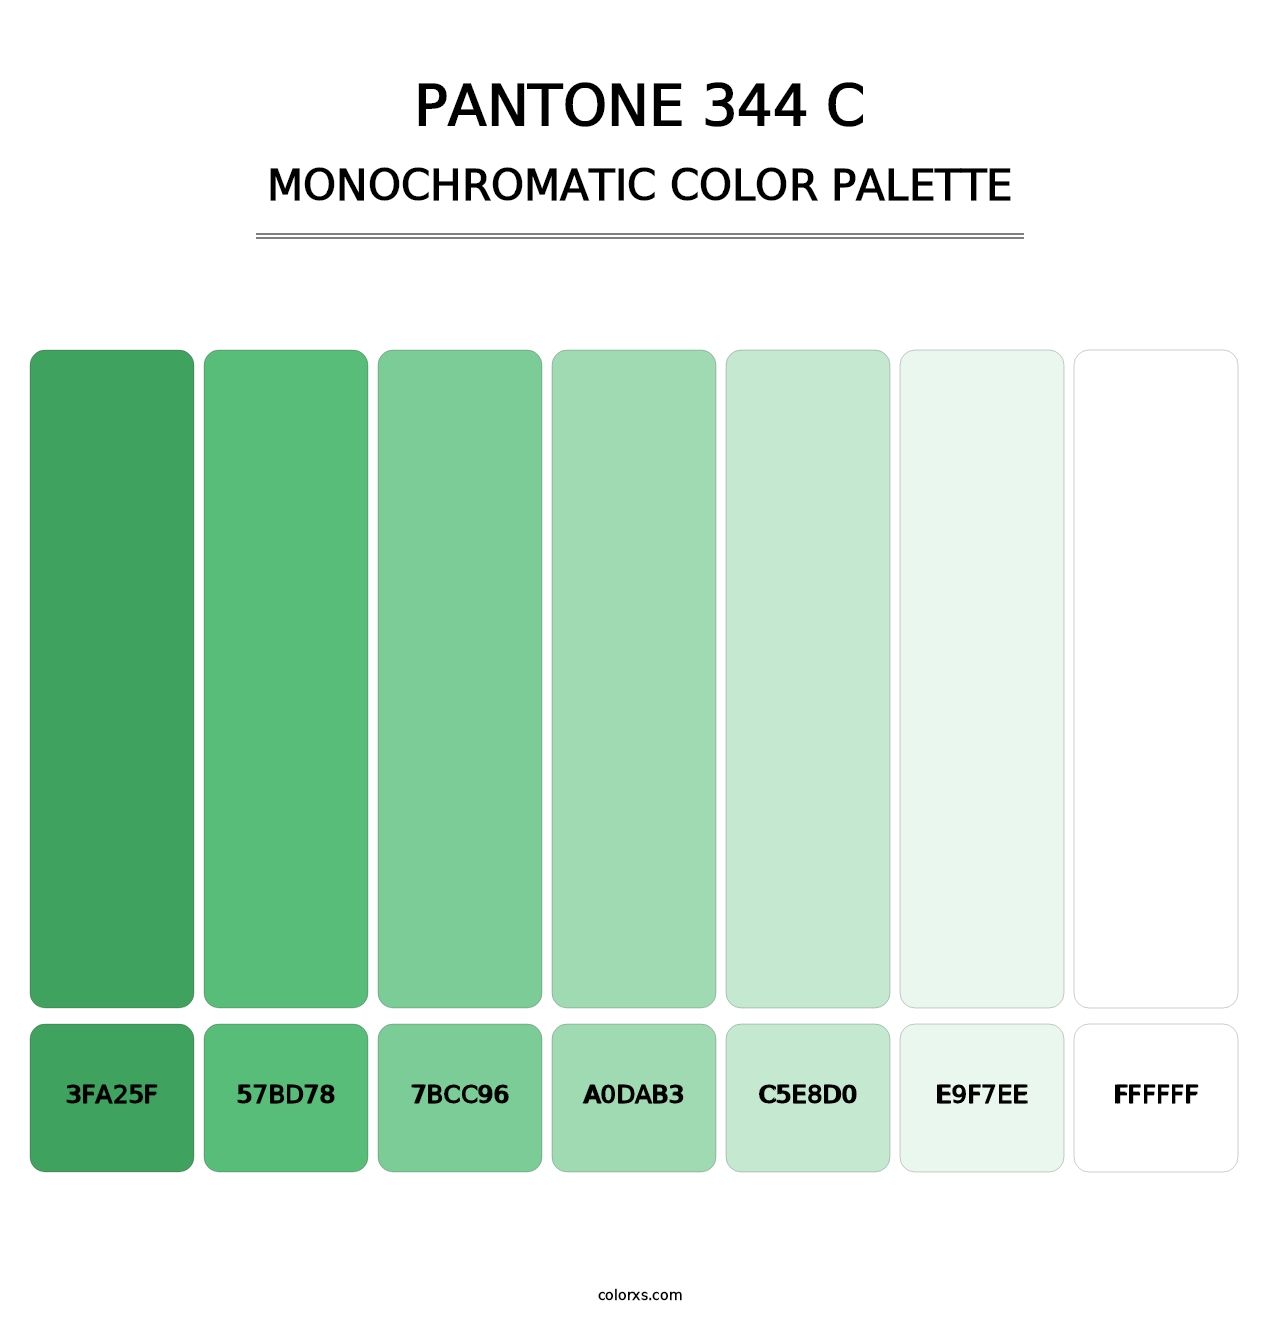 PANTONE 344 C - Monochromatic Color Palette